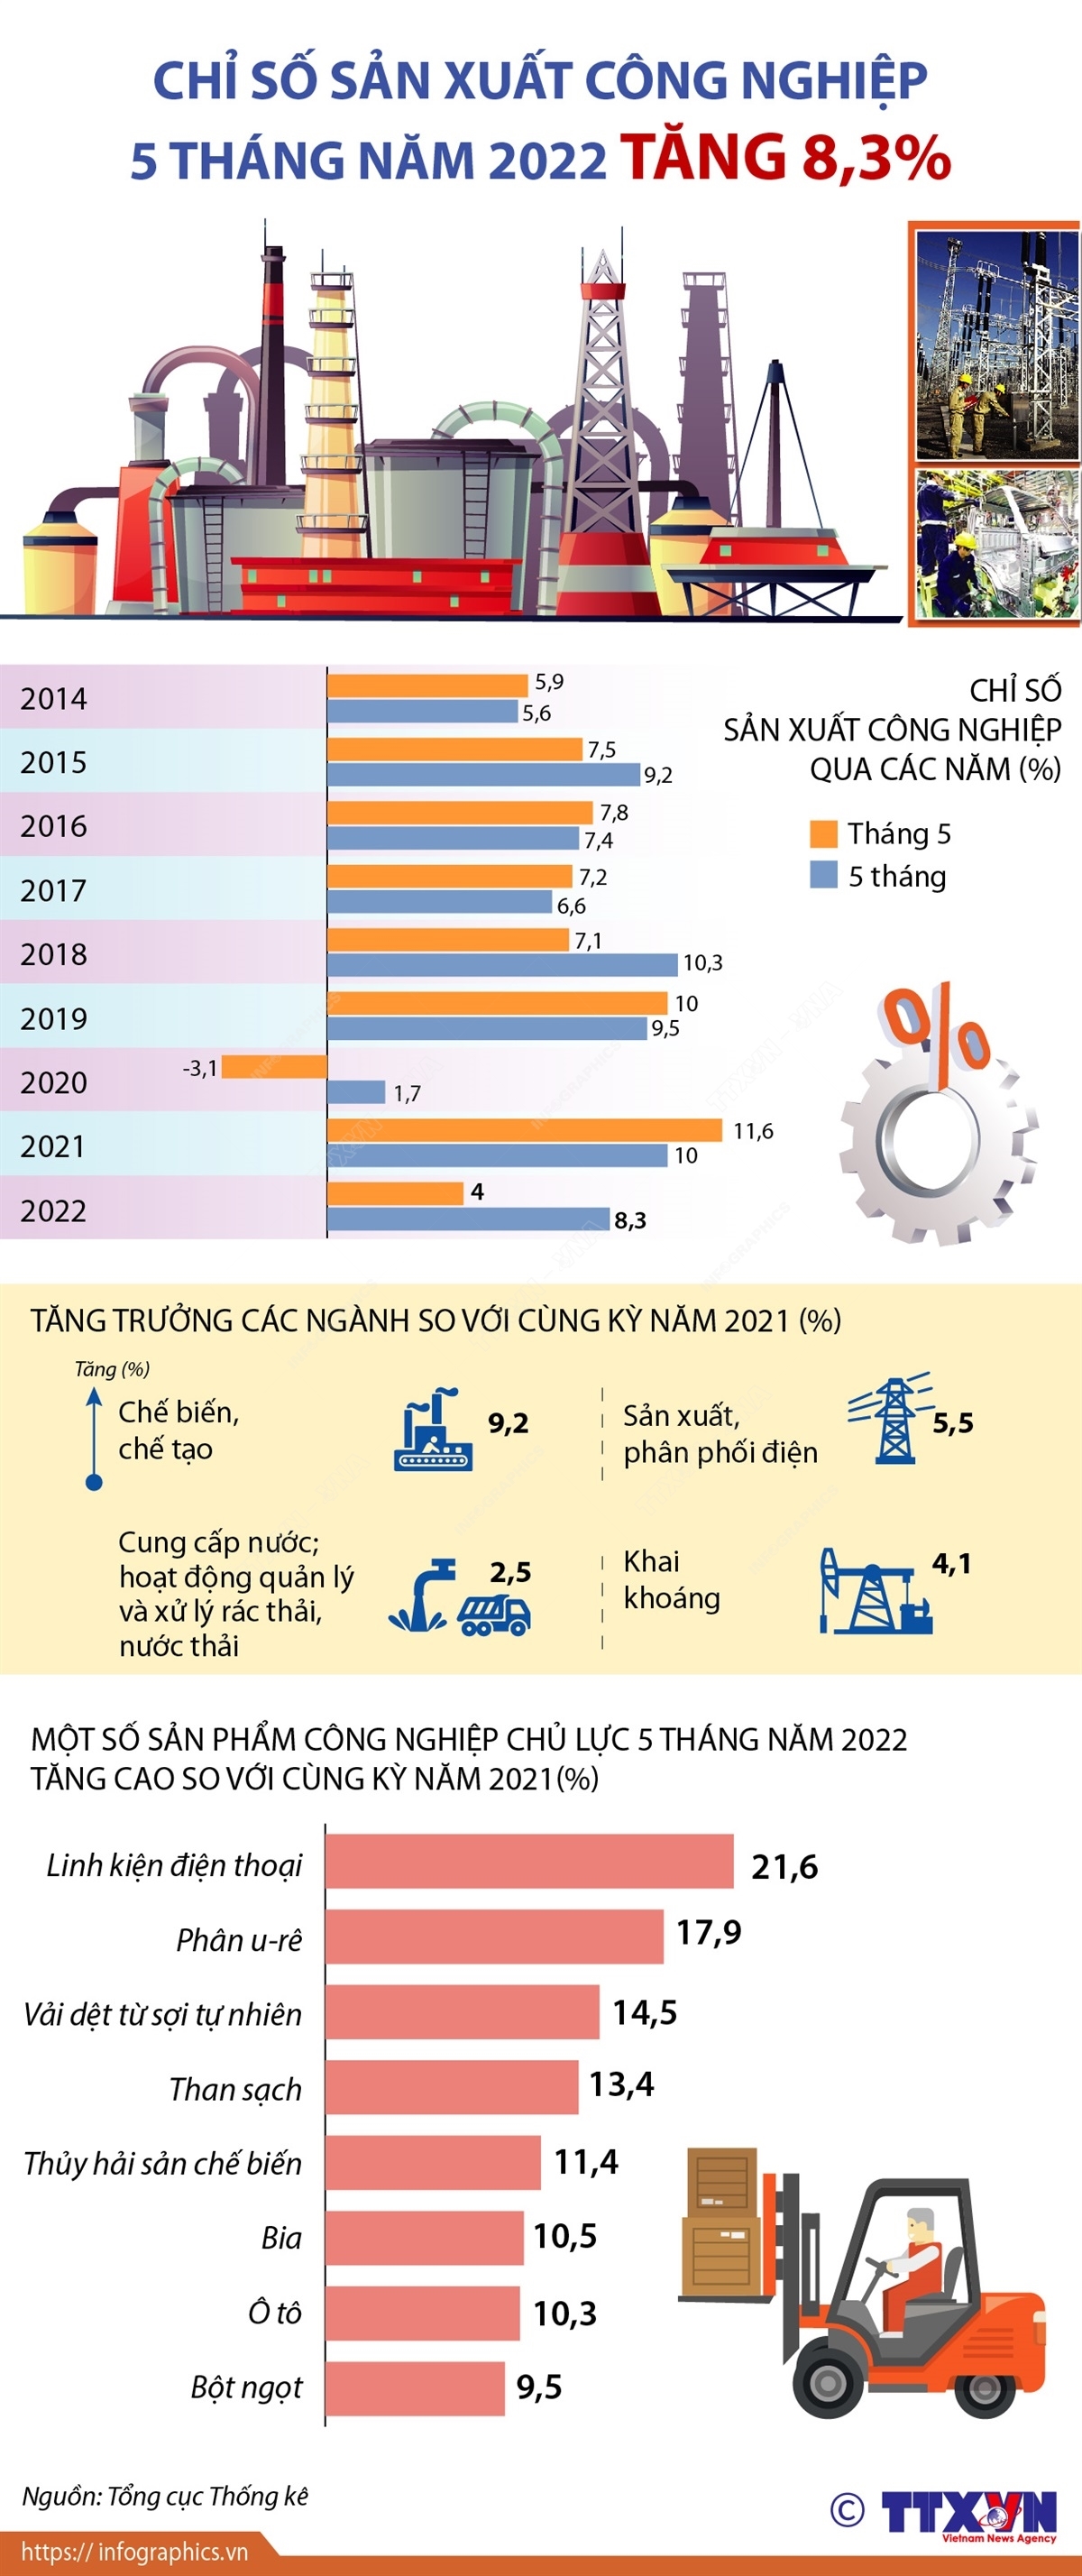 Chỉ số sản xuất công nghiệp 5 tháng năm 2022 tăng 8,3%